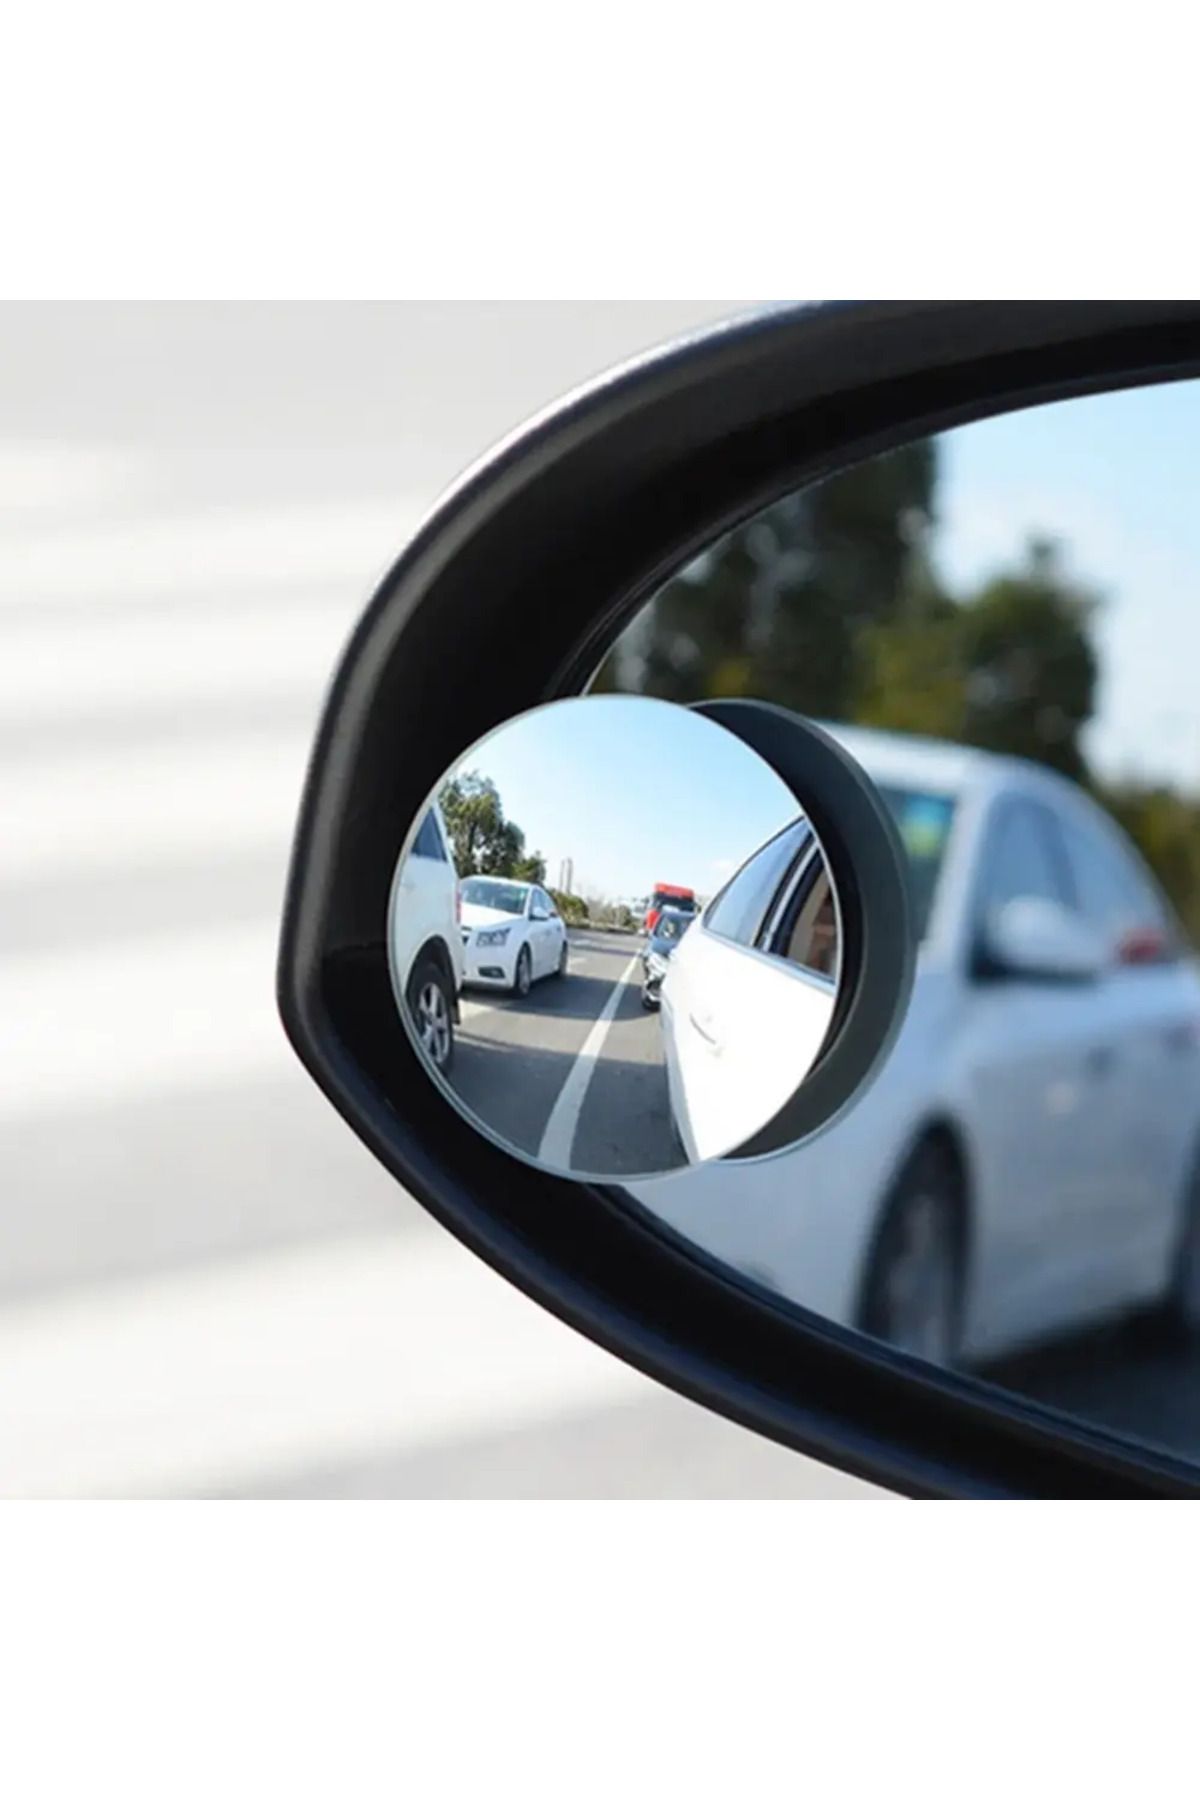 BMW Kör Nokta Aynası Park Etme Aynası Oto Araç Geniş Açı Aynası 2Lİ SET